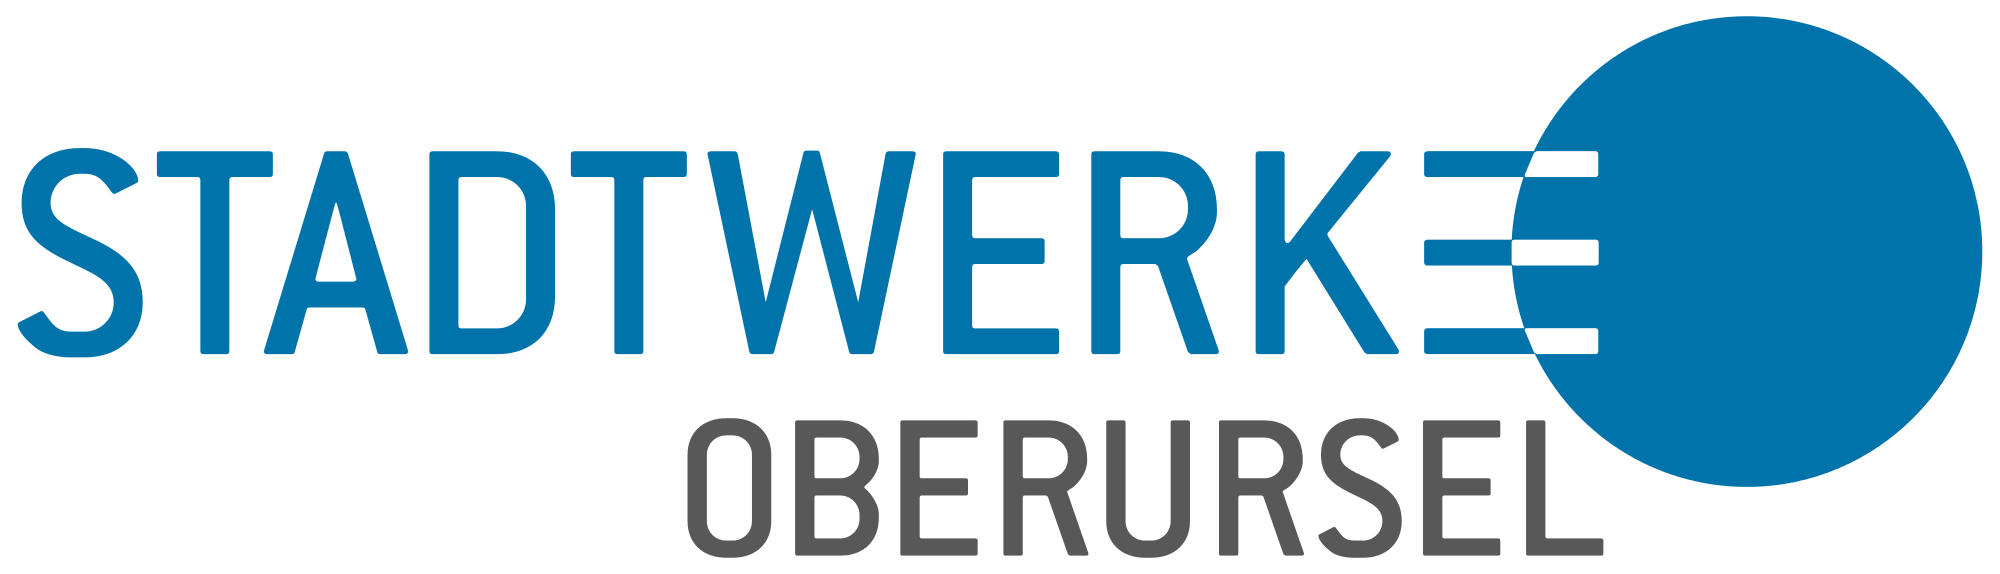 Stadtwerke Oberursel logo